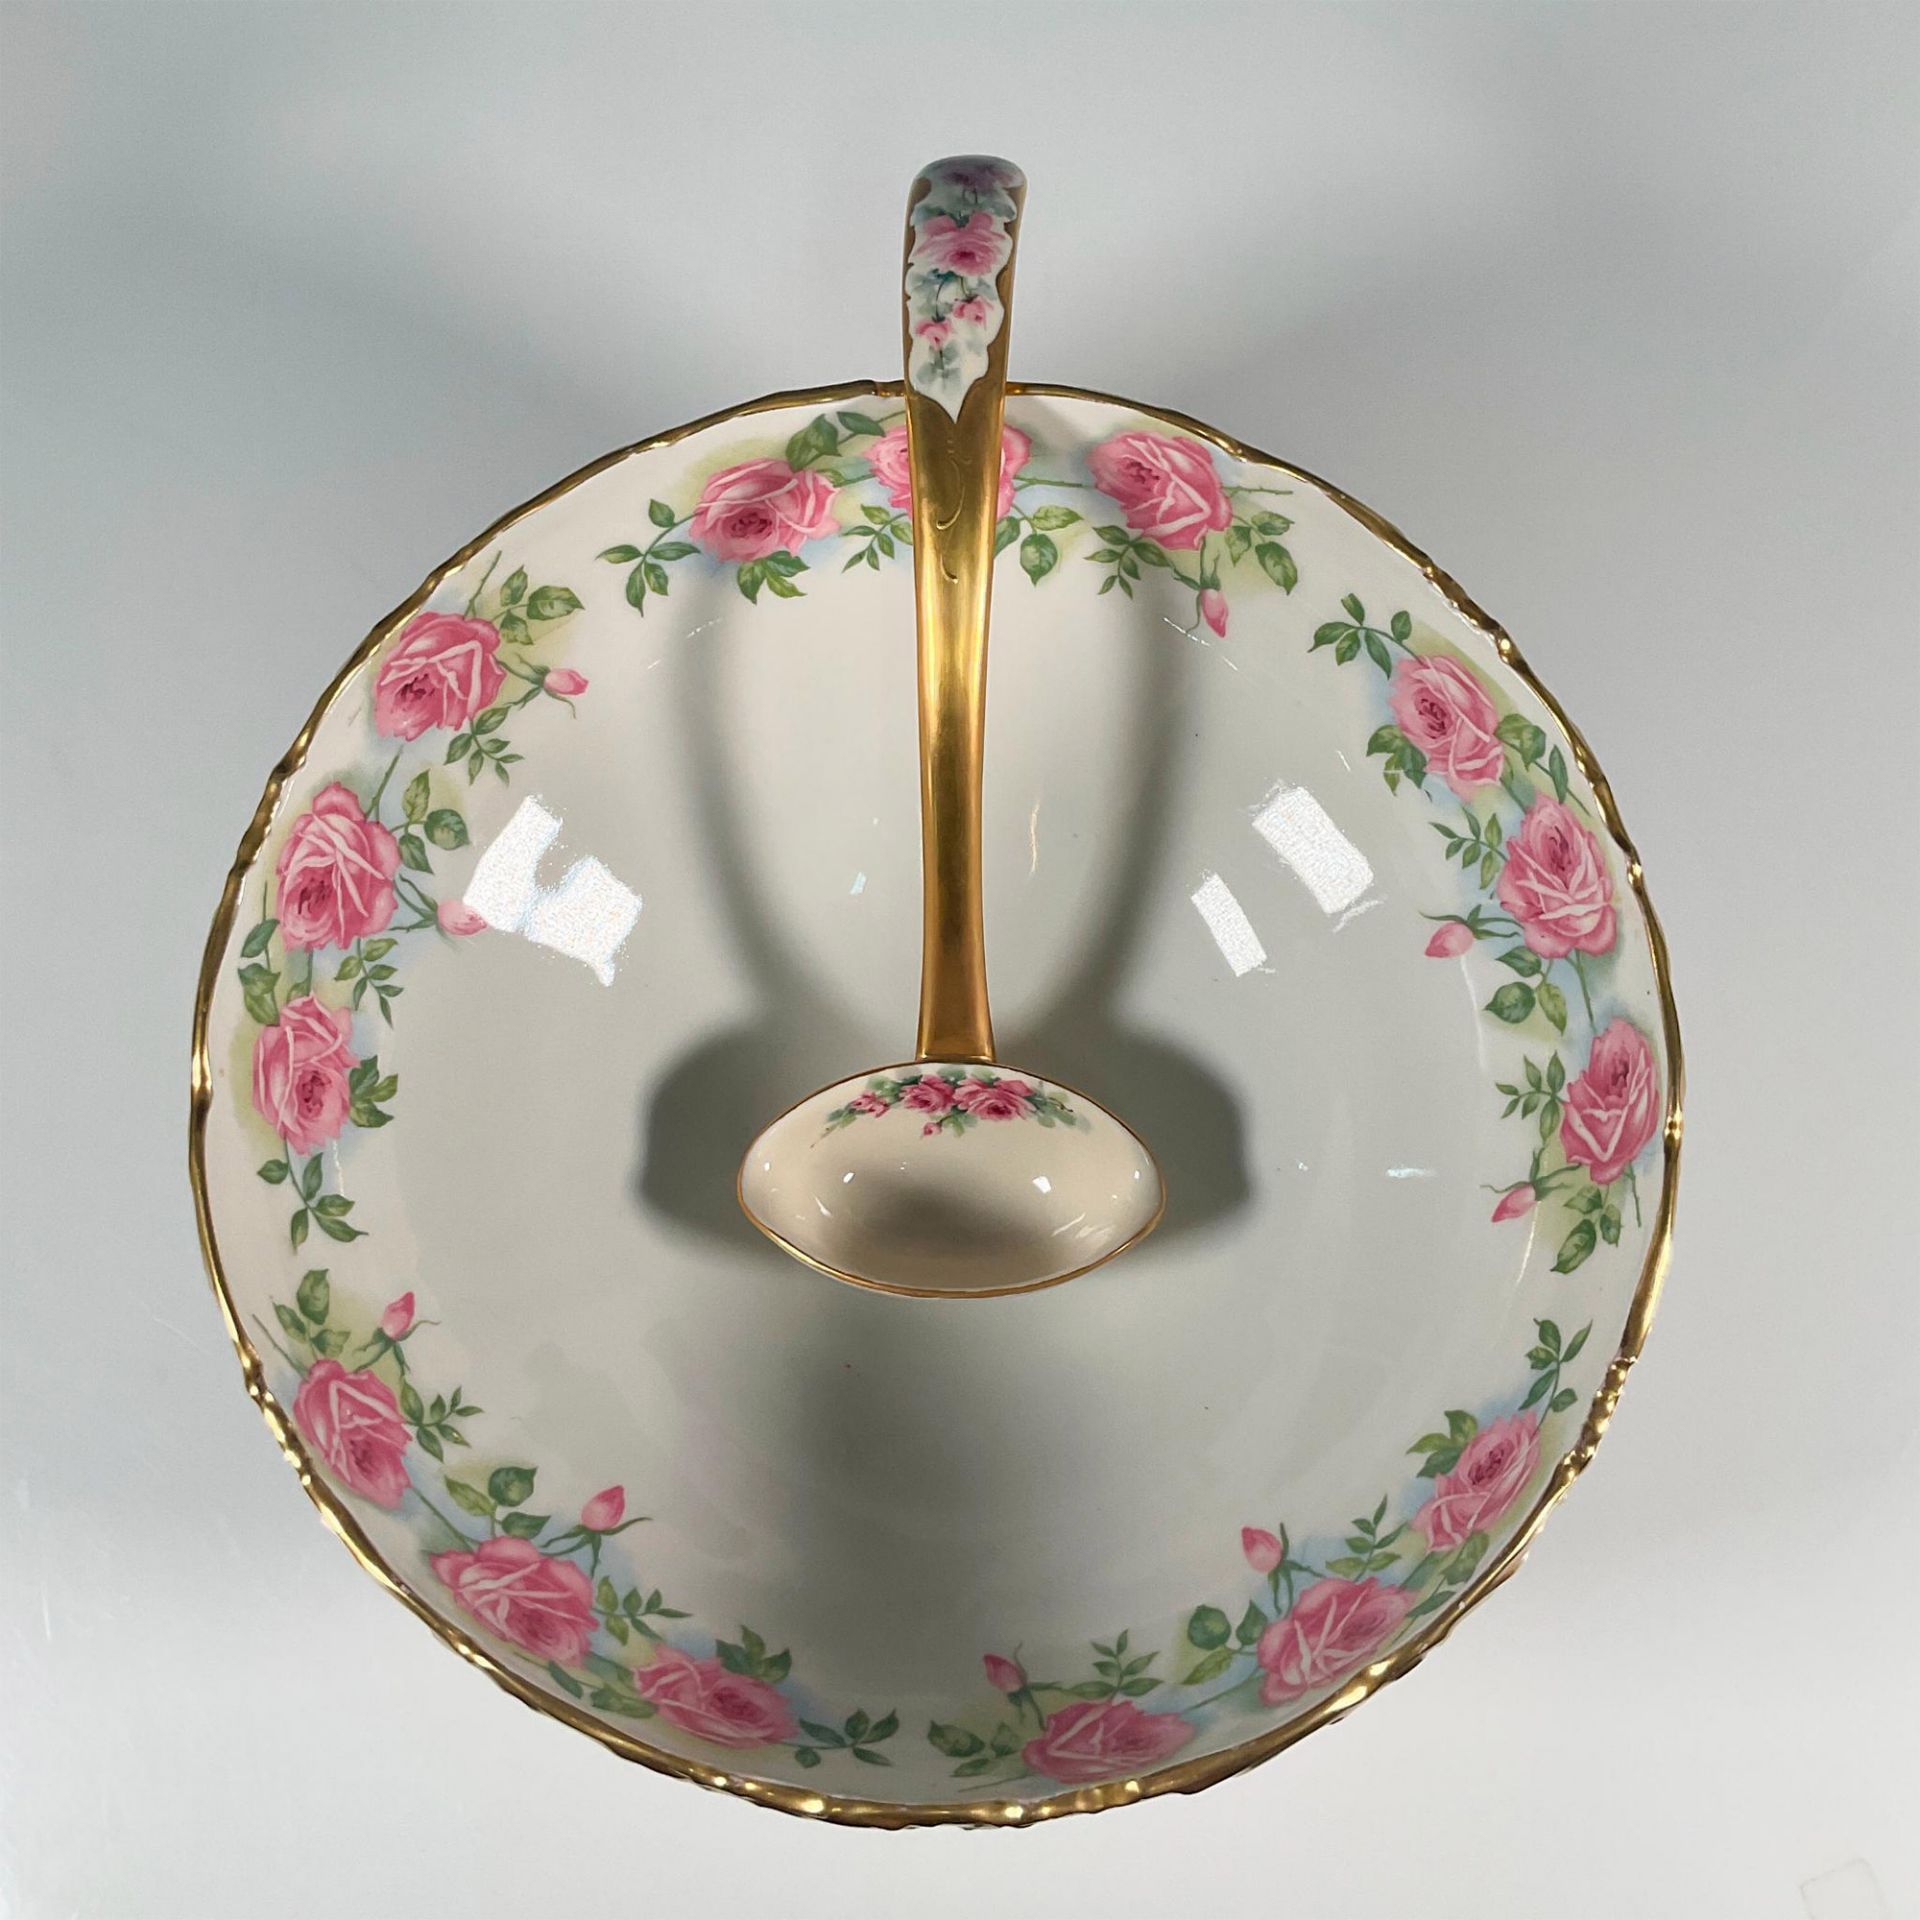 2pc T & V Limoges Porcelain Pink Roses Punch Bowl and Ladle - Image 2 of 3